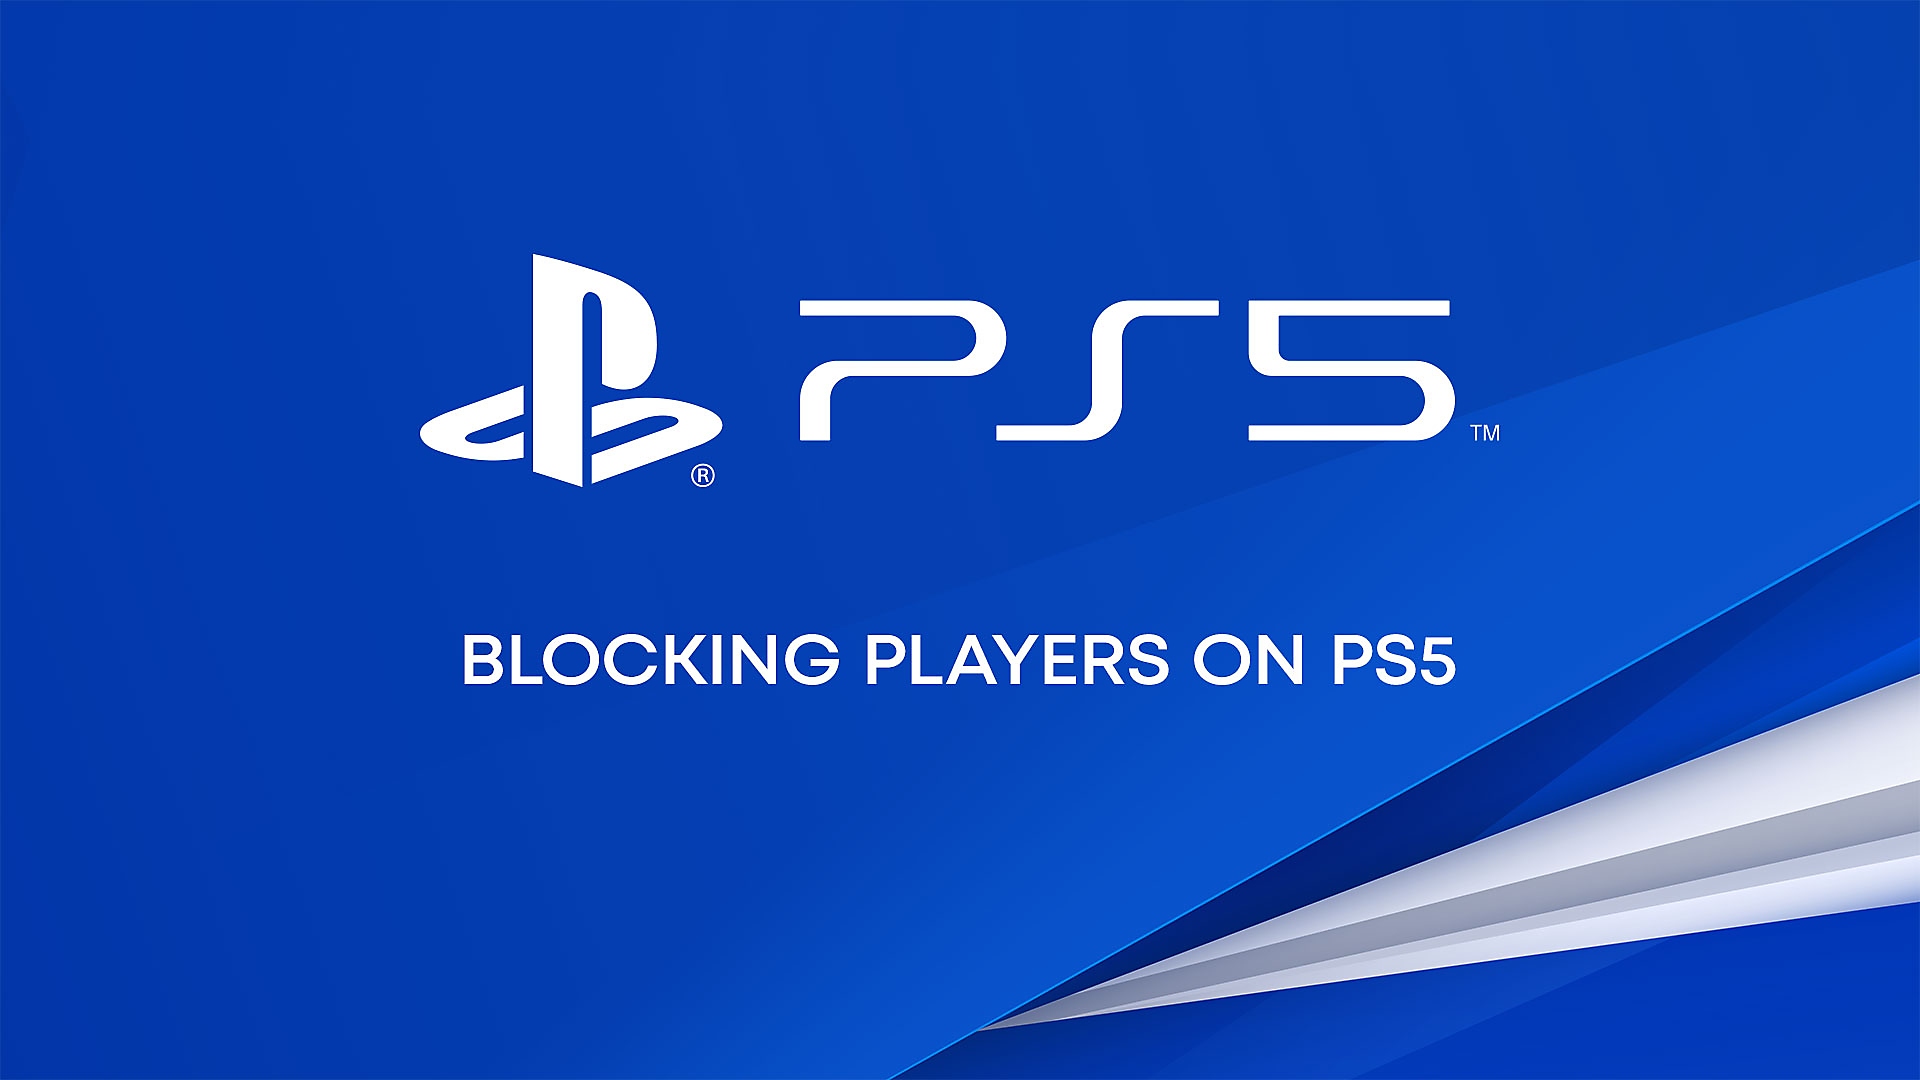 Vidéo Youtube sur le blocage de joueurs sur console PS5